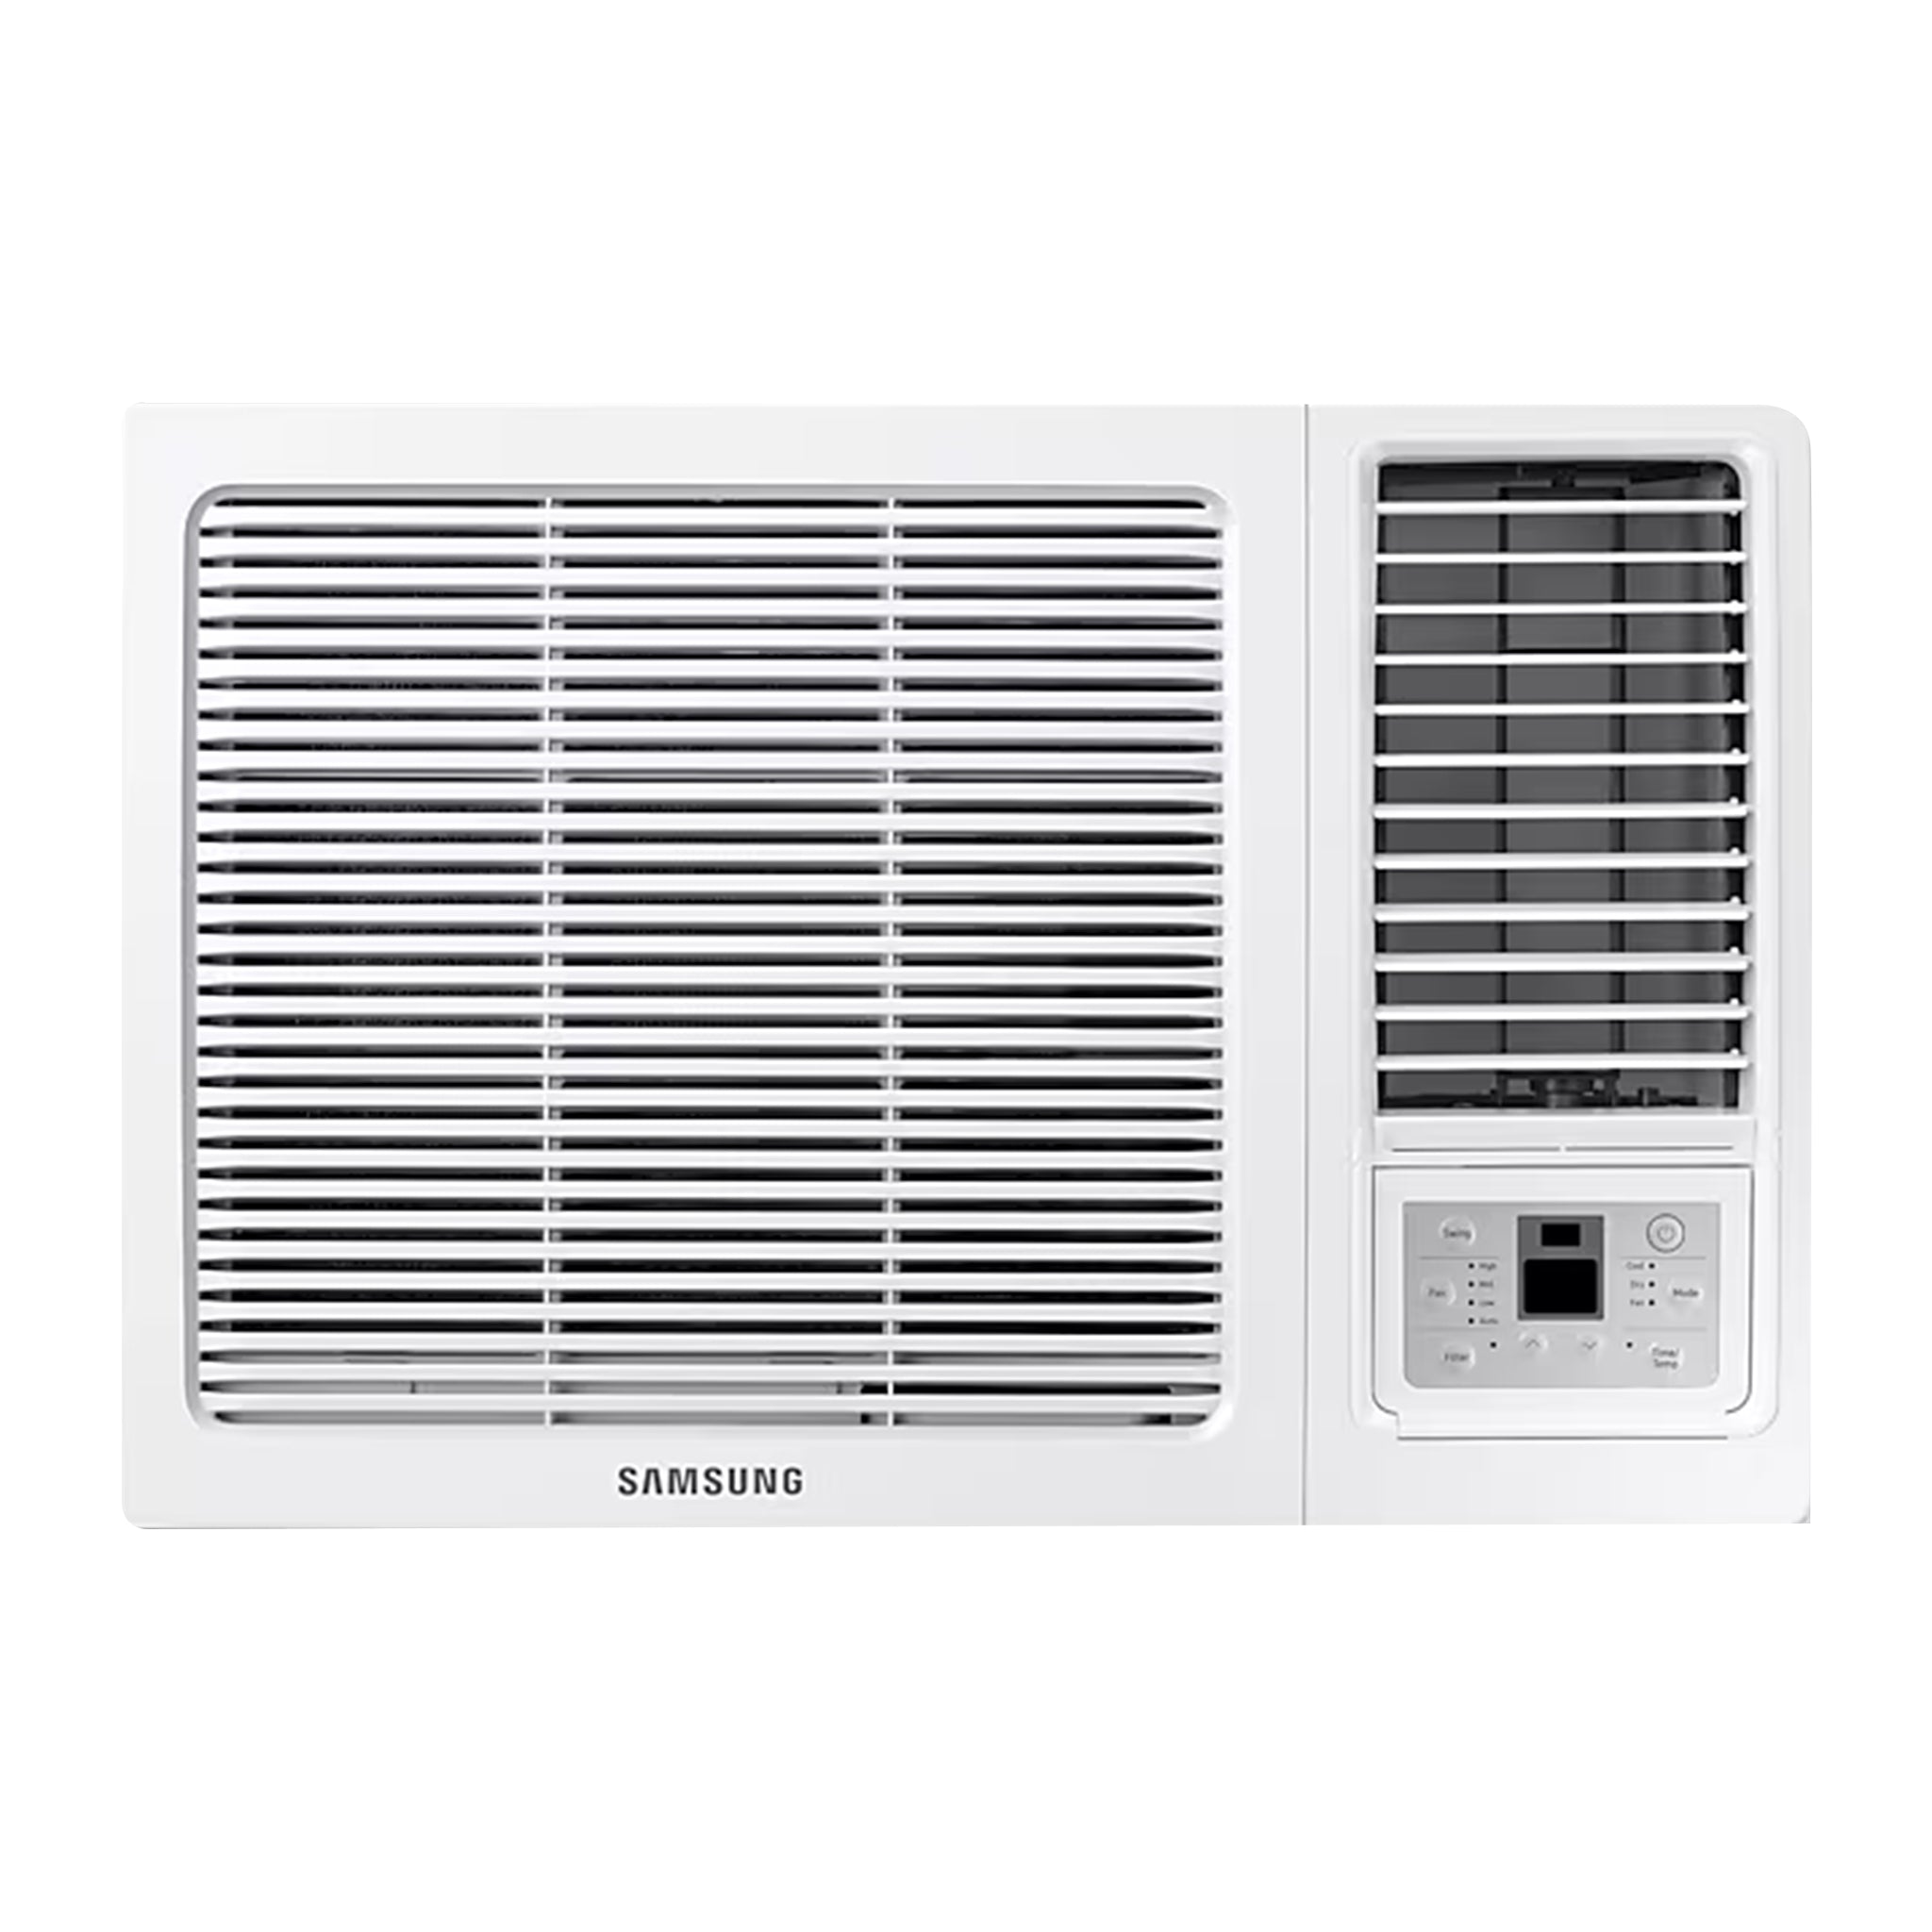 SAMSUNG AWAYHGAW Window-type Inverter Air Conditioner Samsung